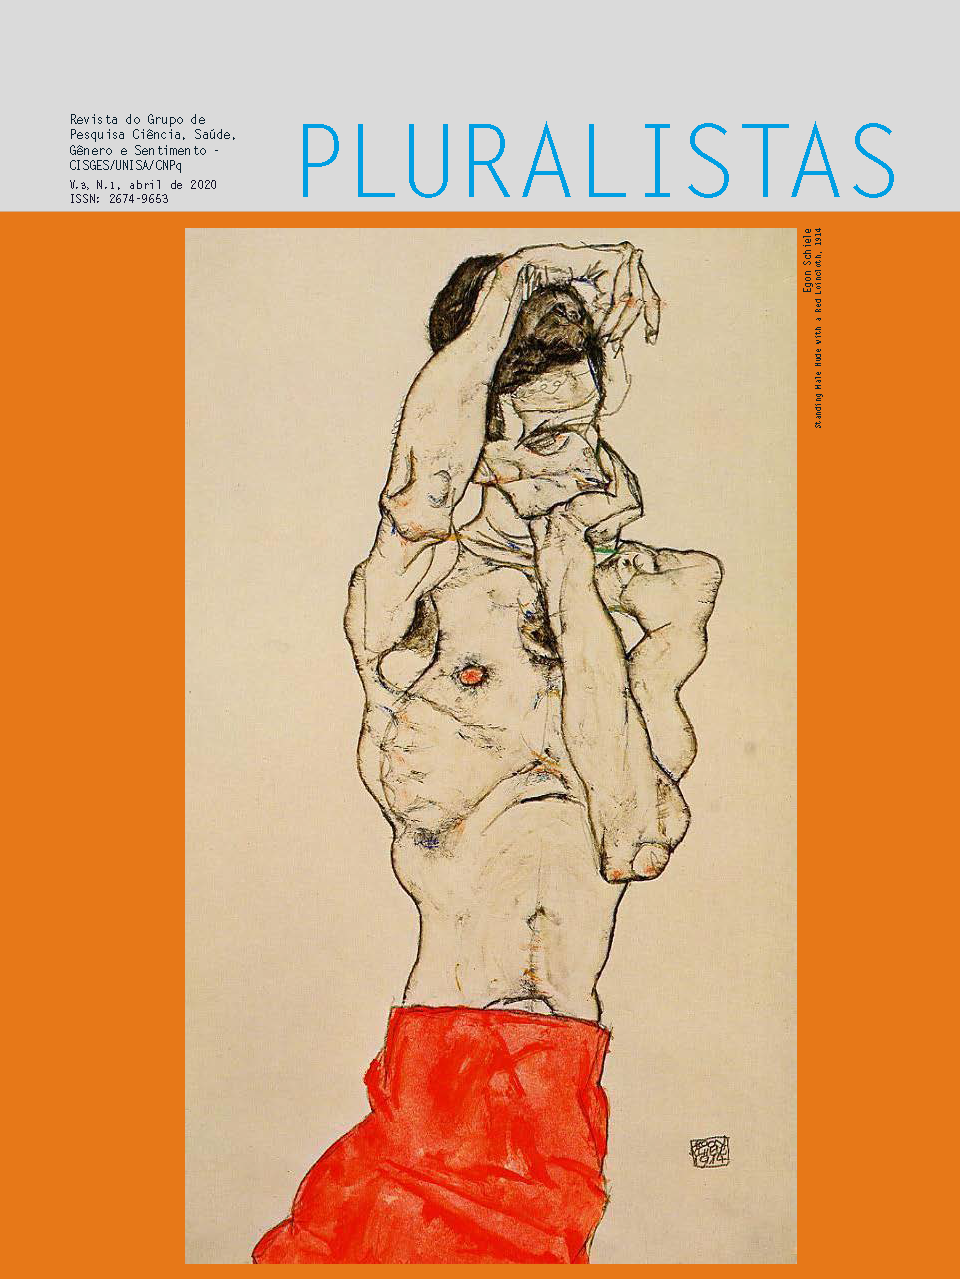 					Visualizar v. 3 n. 1 (2020): Revista Pluralistas - Revista do Grupo de Pesquisa Ciência, Saúde, Gênero e Sentimento - CISGES/UNISA/CNpq
				